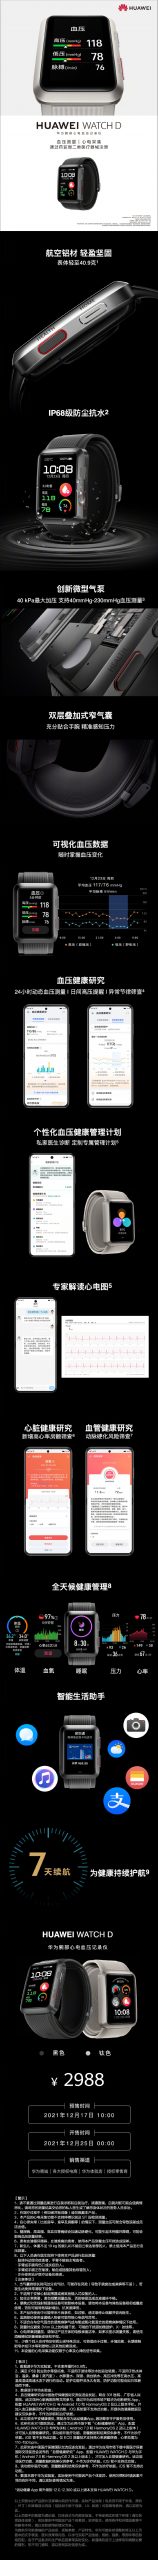 premiera smartwatch Huawei Watch D cena specyfikacja techniczna ciśnienie krwi